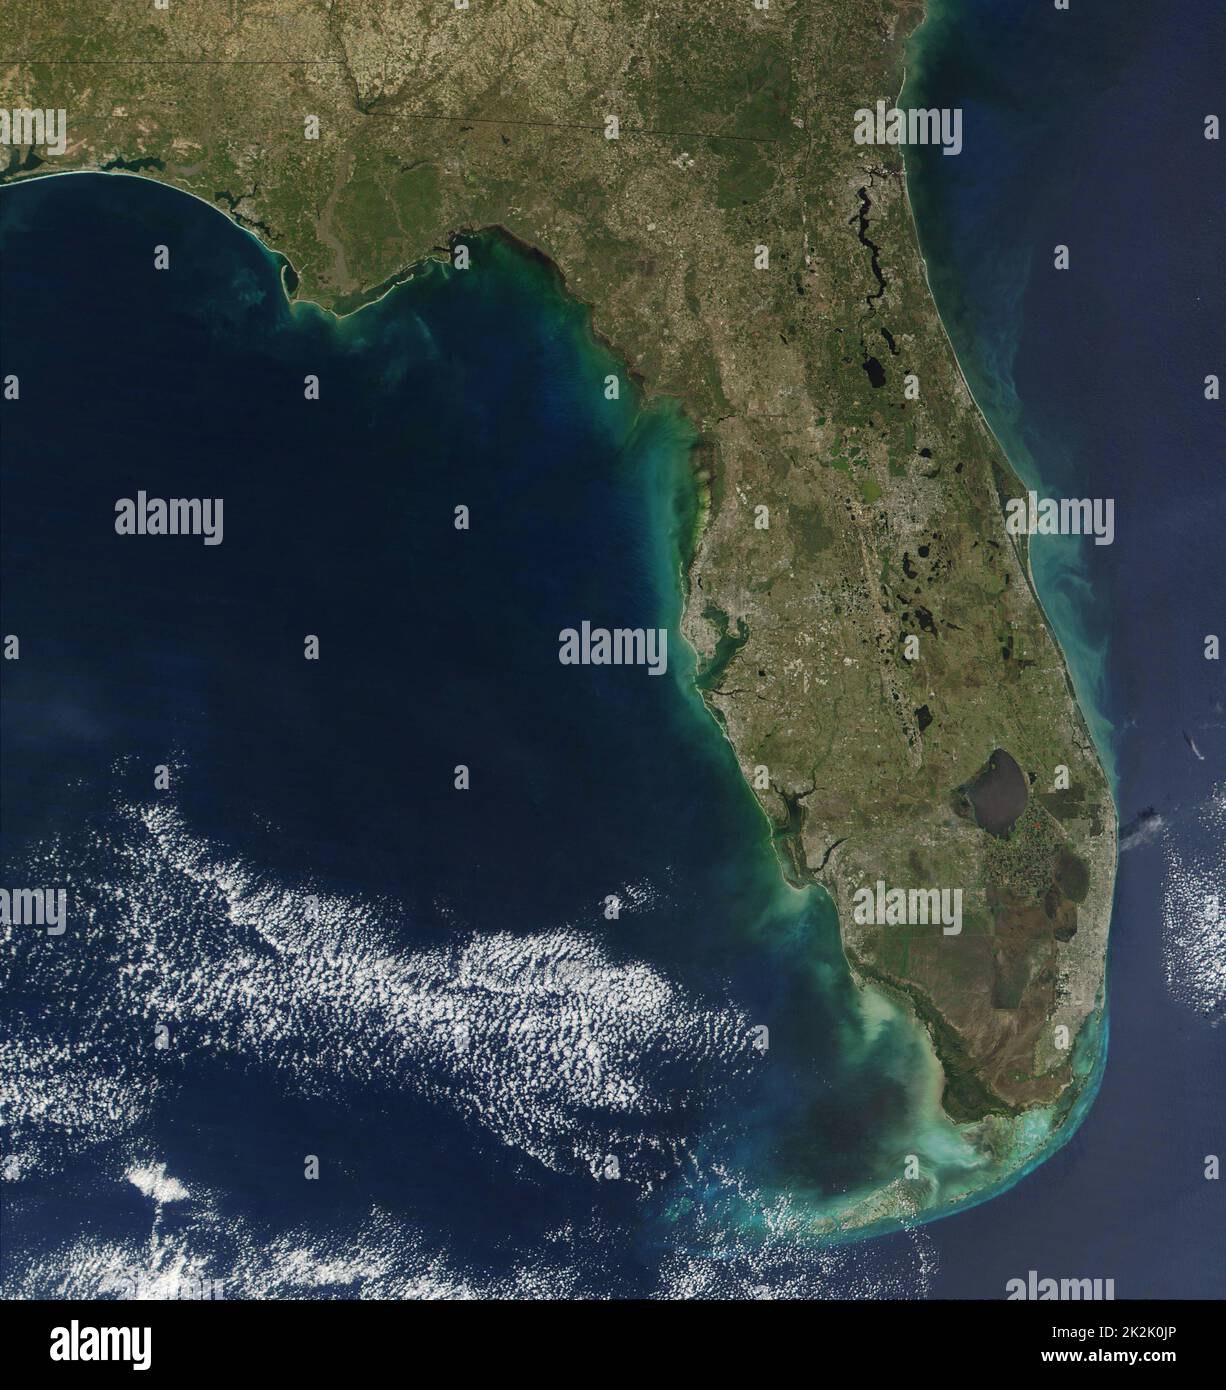 Sedimente der Algenblüte an der Küste von Florida im Süden der Vereinigten Staaten von Amerika, die die Halbinsel eine grünlich-Rahmen. Eine Algenblüte ist eine rasche Zunahme oder Anhäufung in der Bevölkerung von Algen in einem aquatischen System. Stockfoto